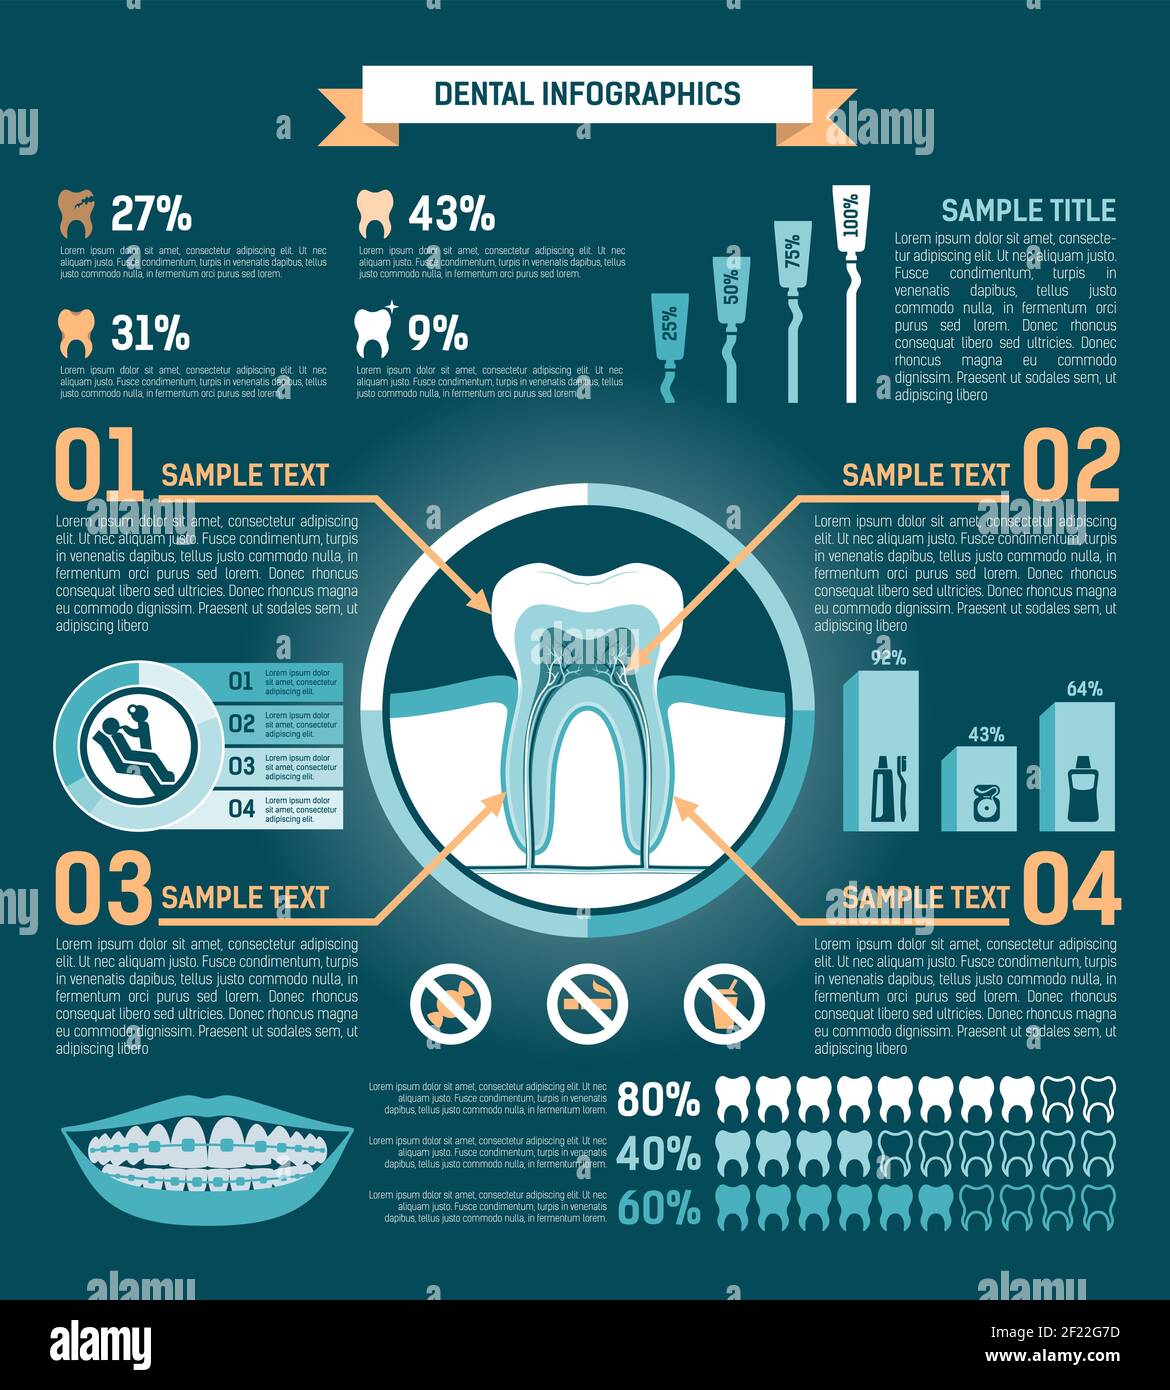 Infographie sur les dents : illustration du vecteur de traitement, de prévention et de prothèse Illustration de Vecteur